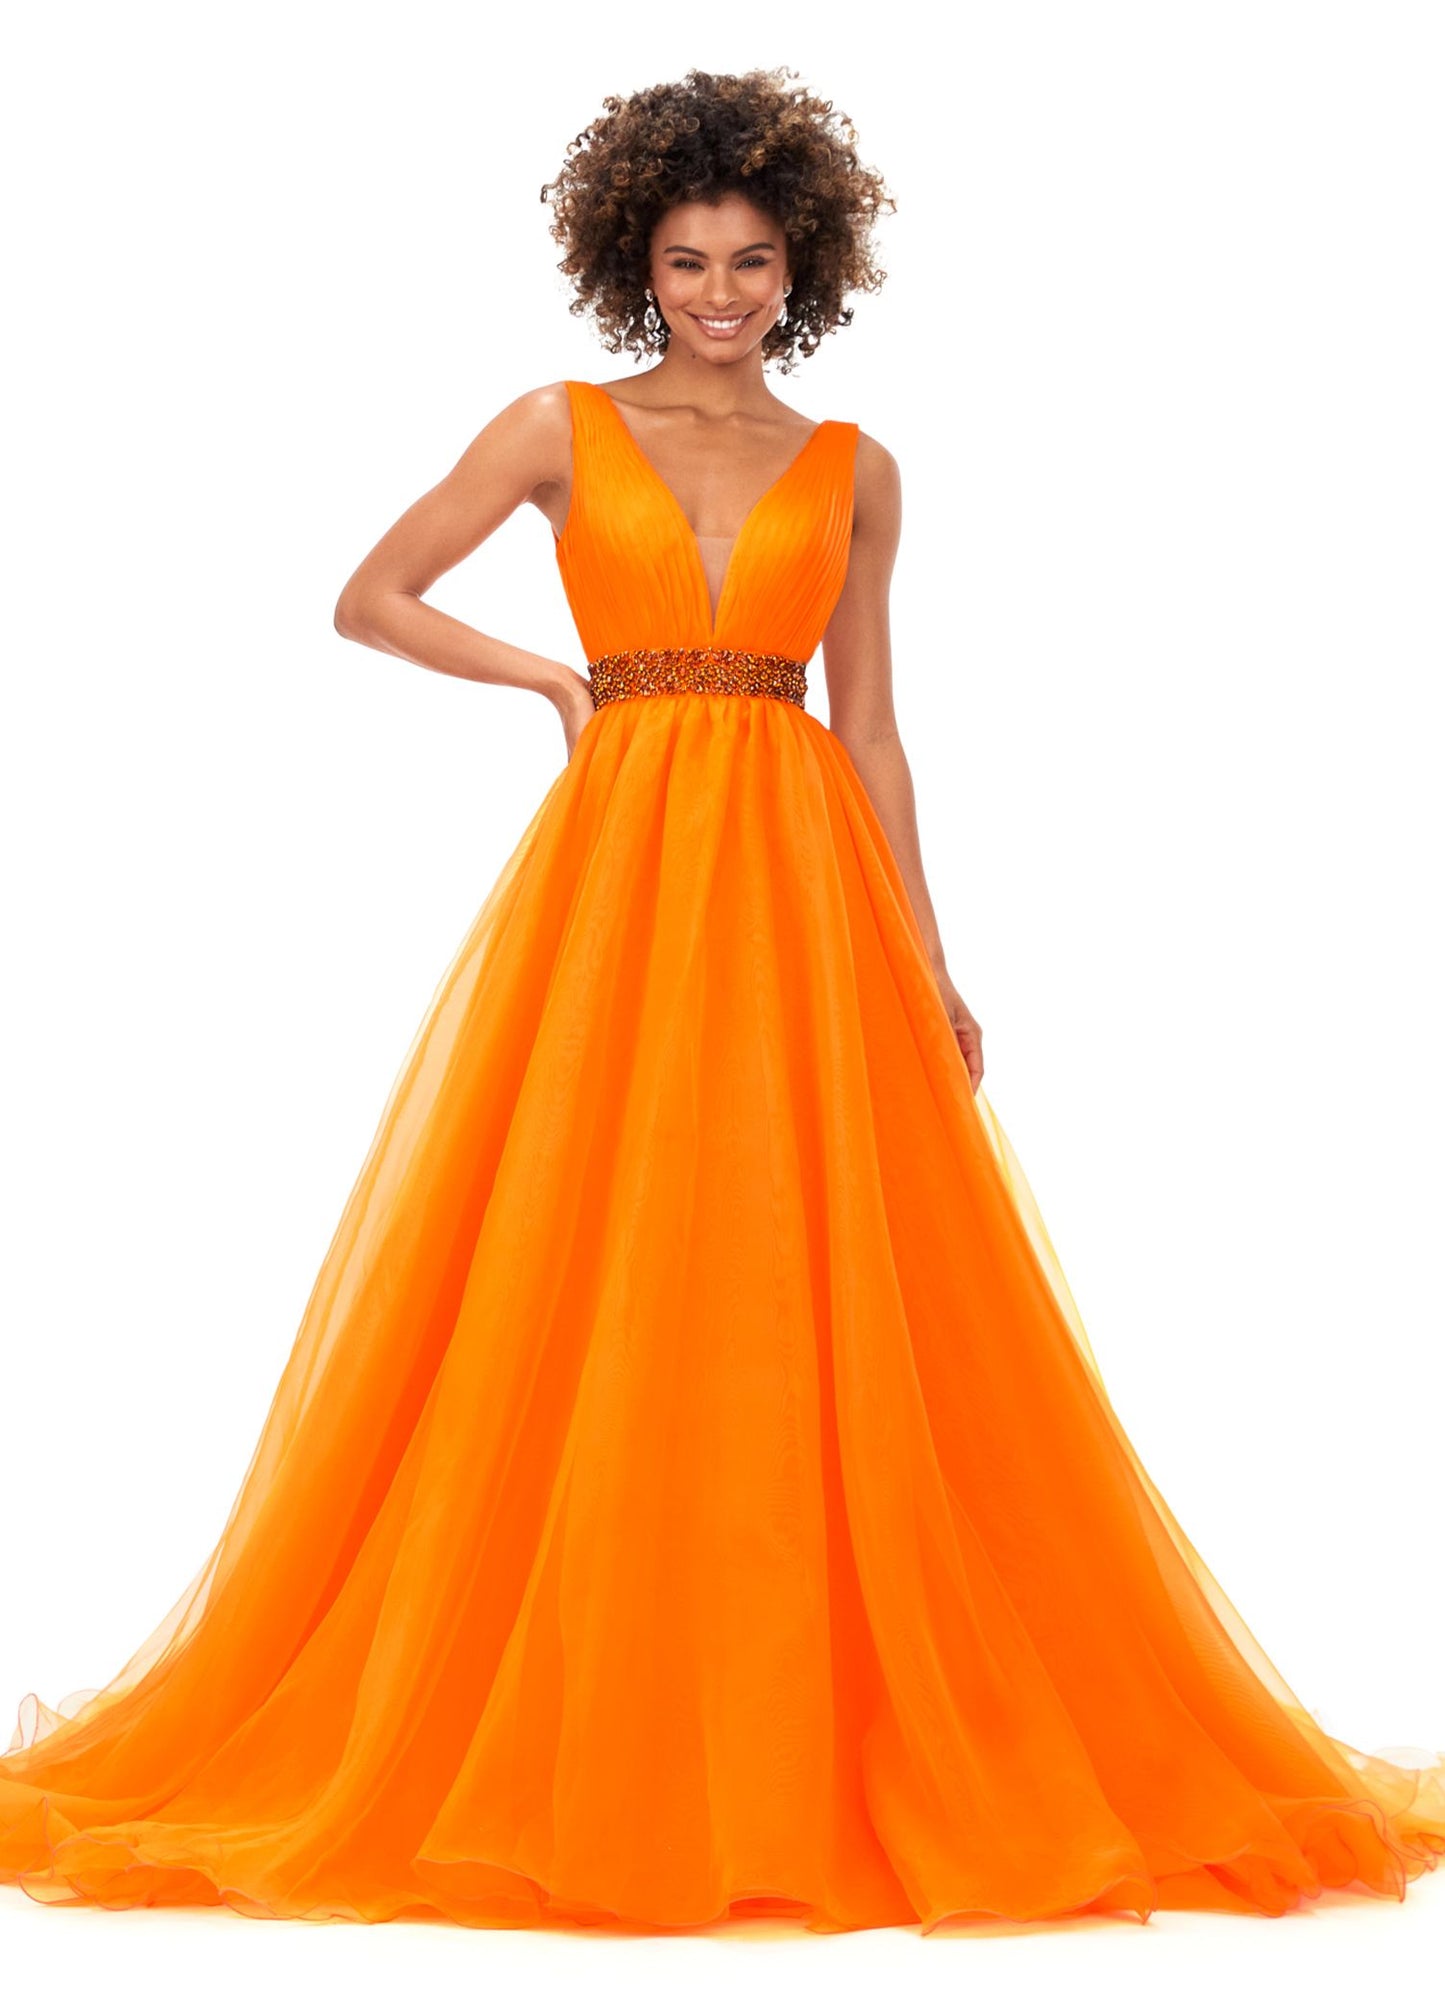 Ashley Lauren 11305 V Neckline Organza Prom Dress Ball Gown